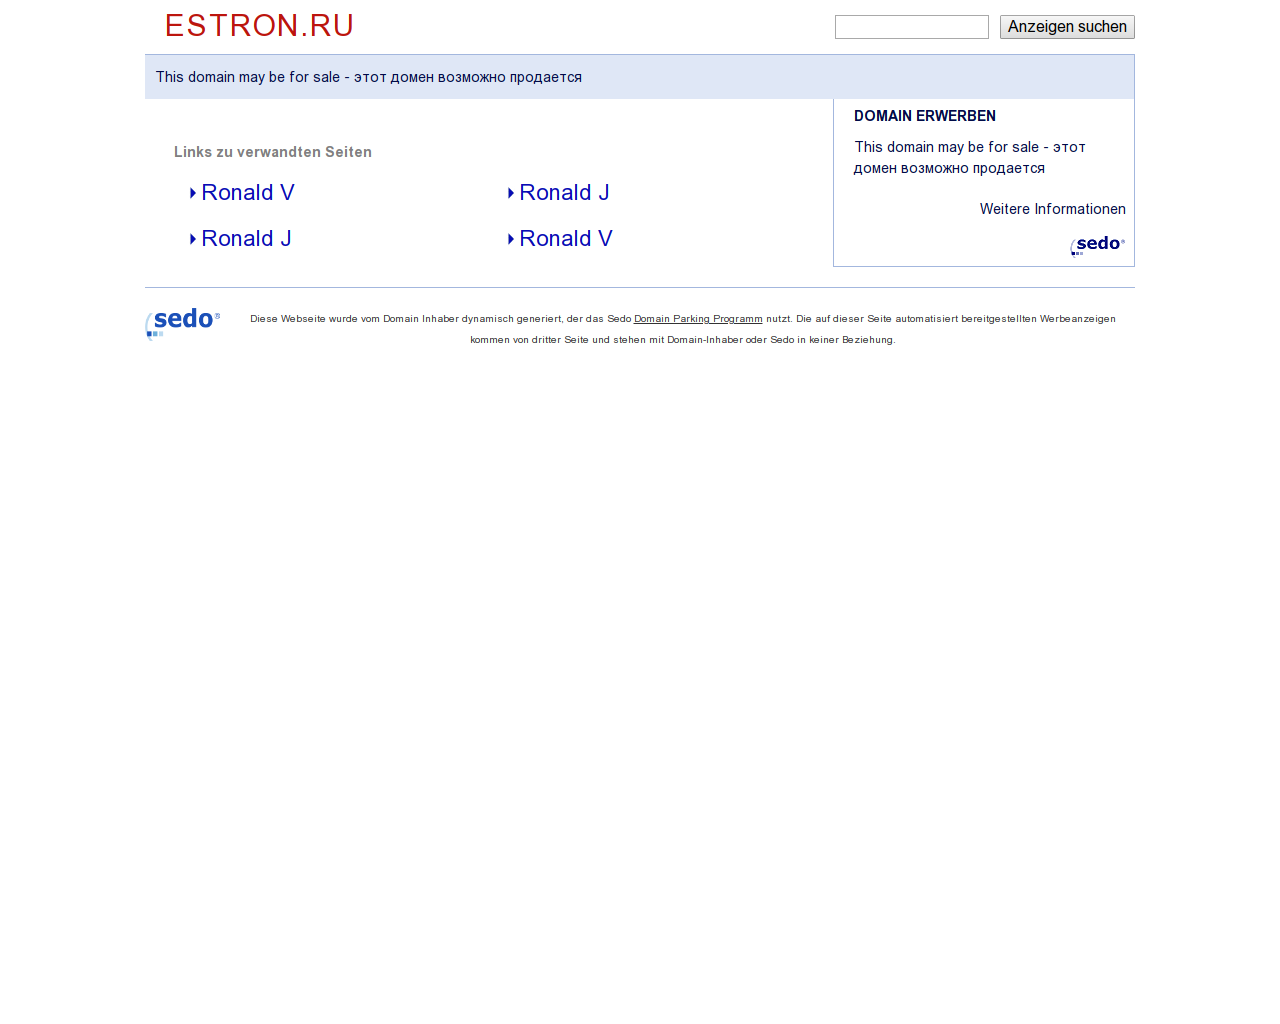 Изображение сайта estron.ru в разрешении 1280x1024